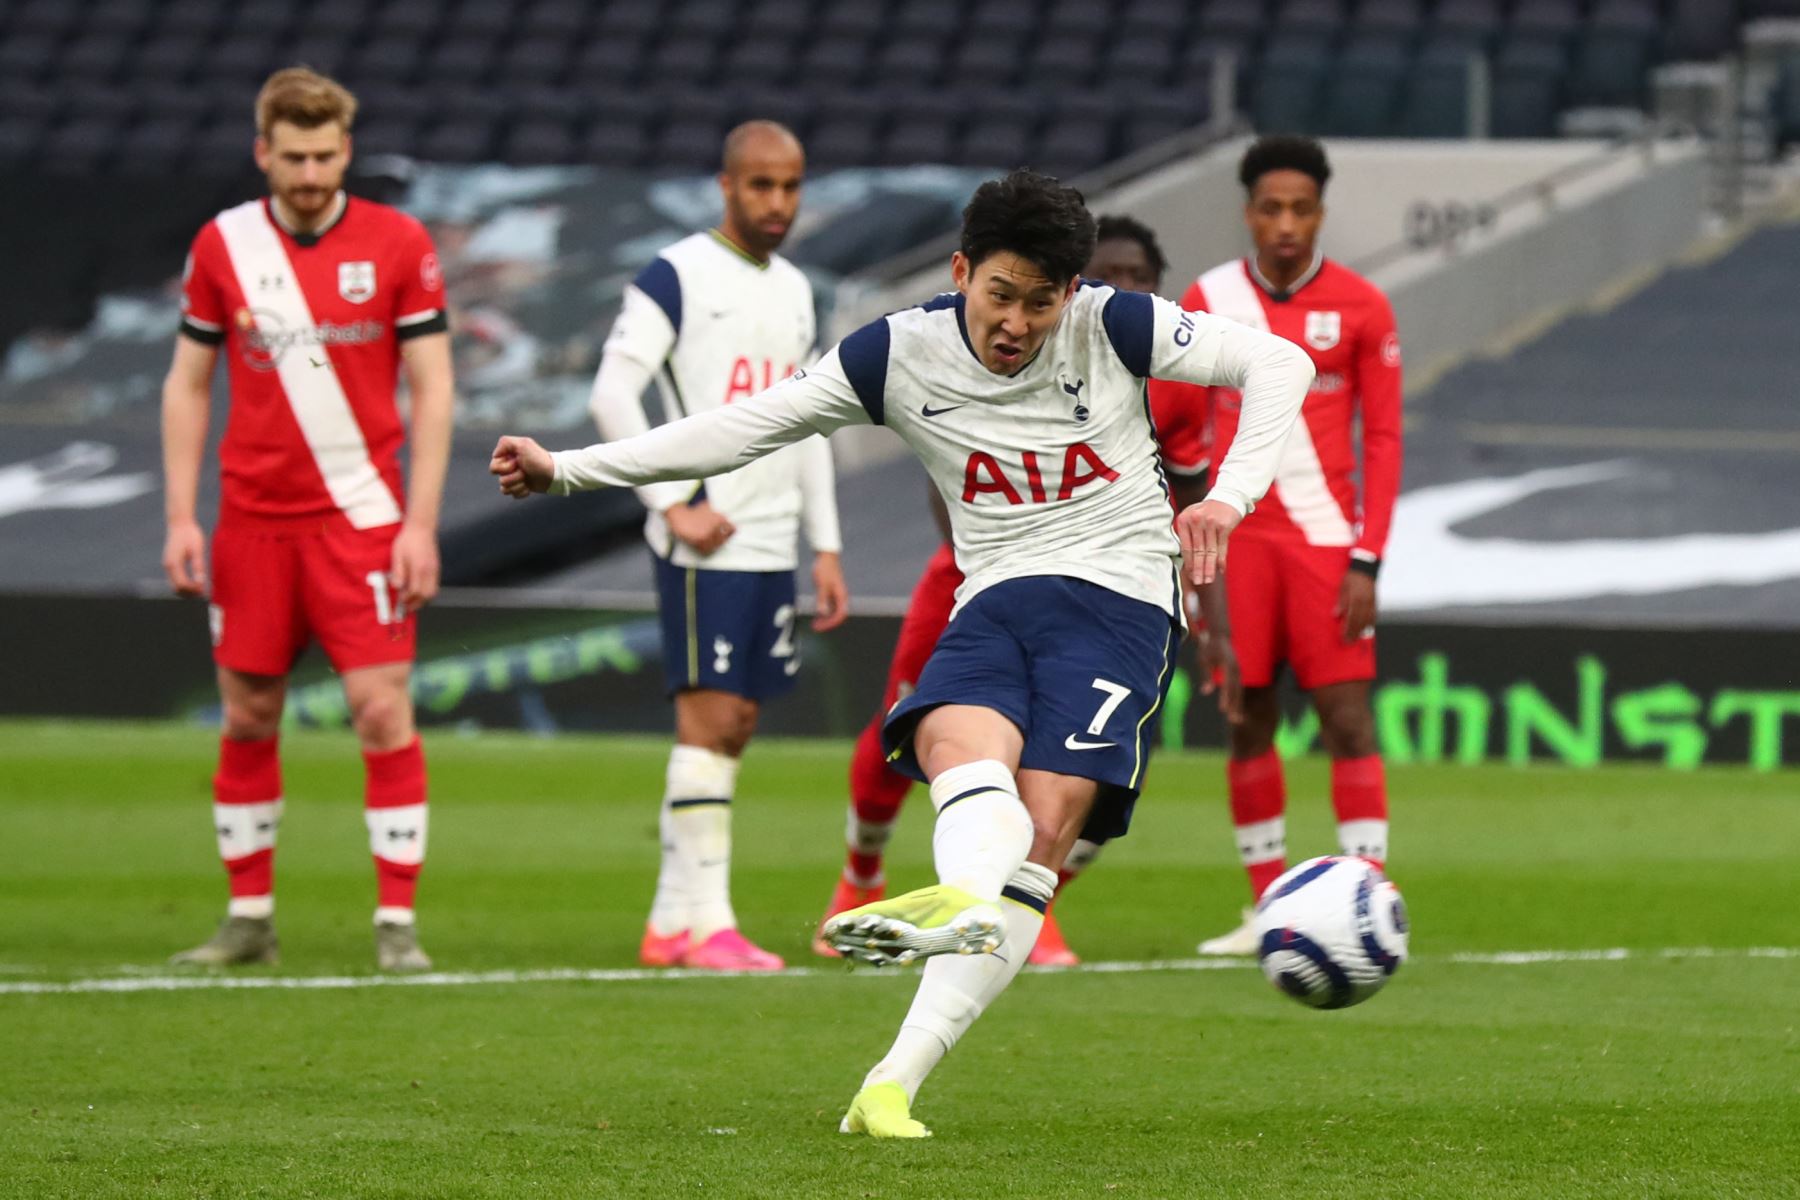 El delantero surcoreano del Tottenham Hotspur, Son Heung-Min, lanza un penalti y anota el segundo gol de su equipo durante el partido de fútbol de la Premier League. Foto: AFP